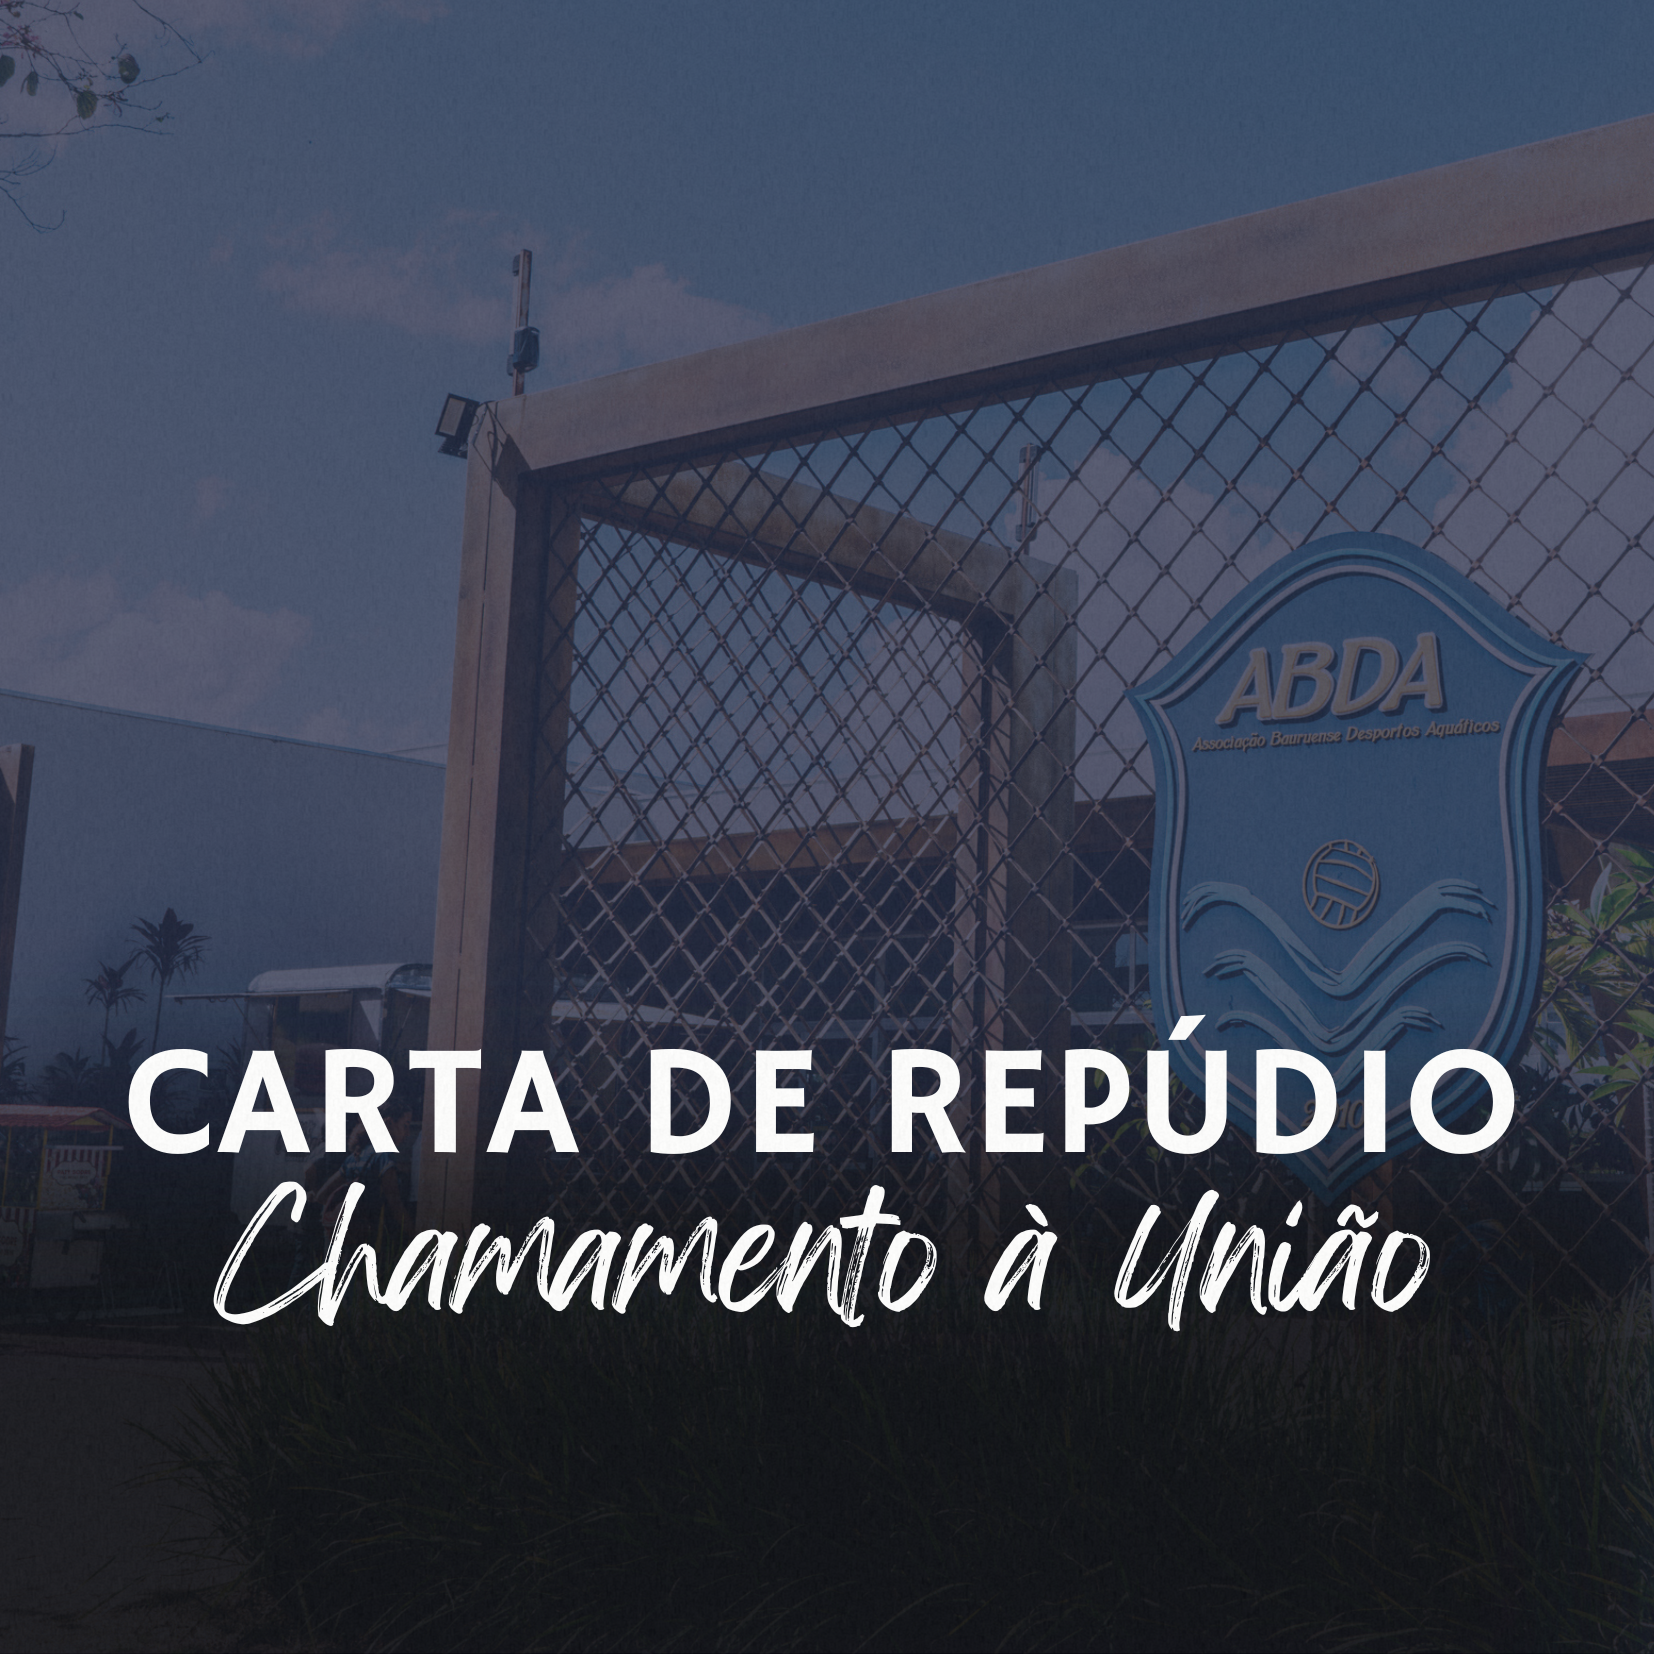 CARTA DE REPDIO - CHAMAMENTO  UNIO